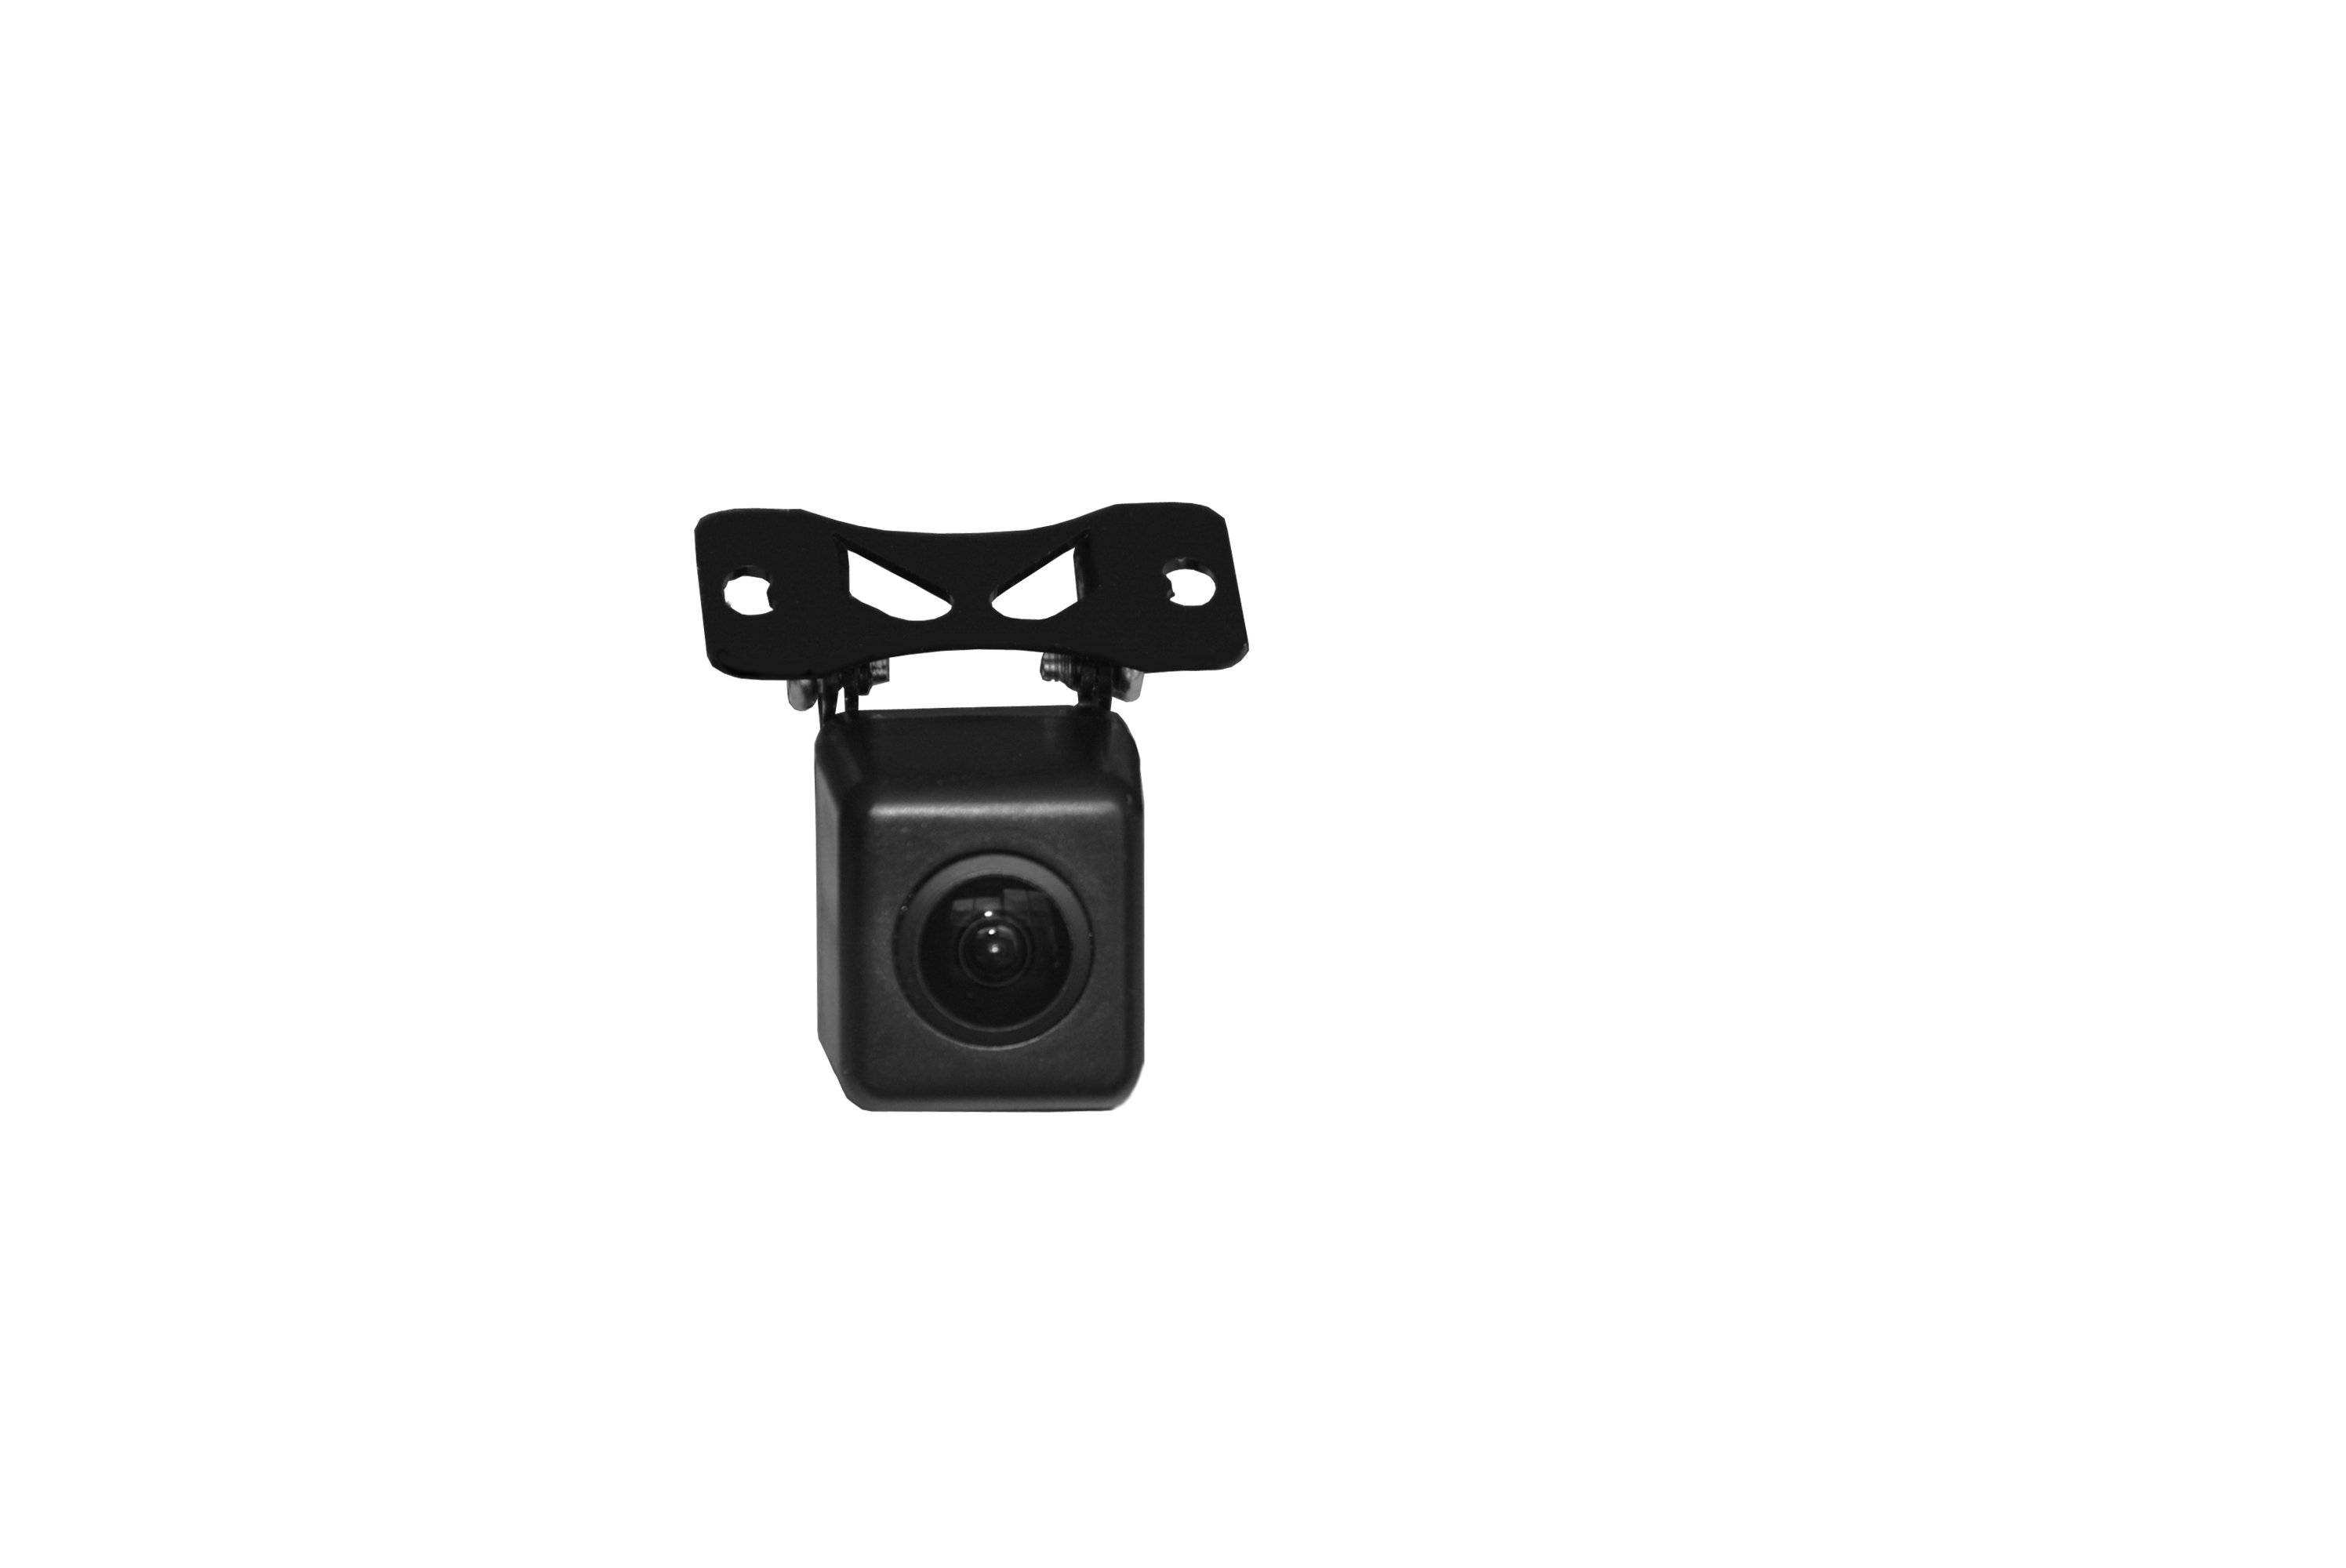 BR-MNC04 mini telecamera retrovisore per veicolo